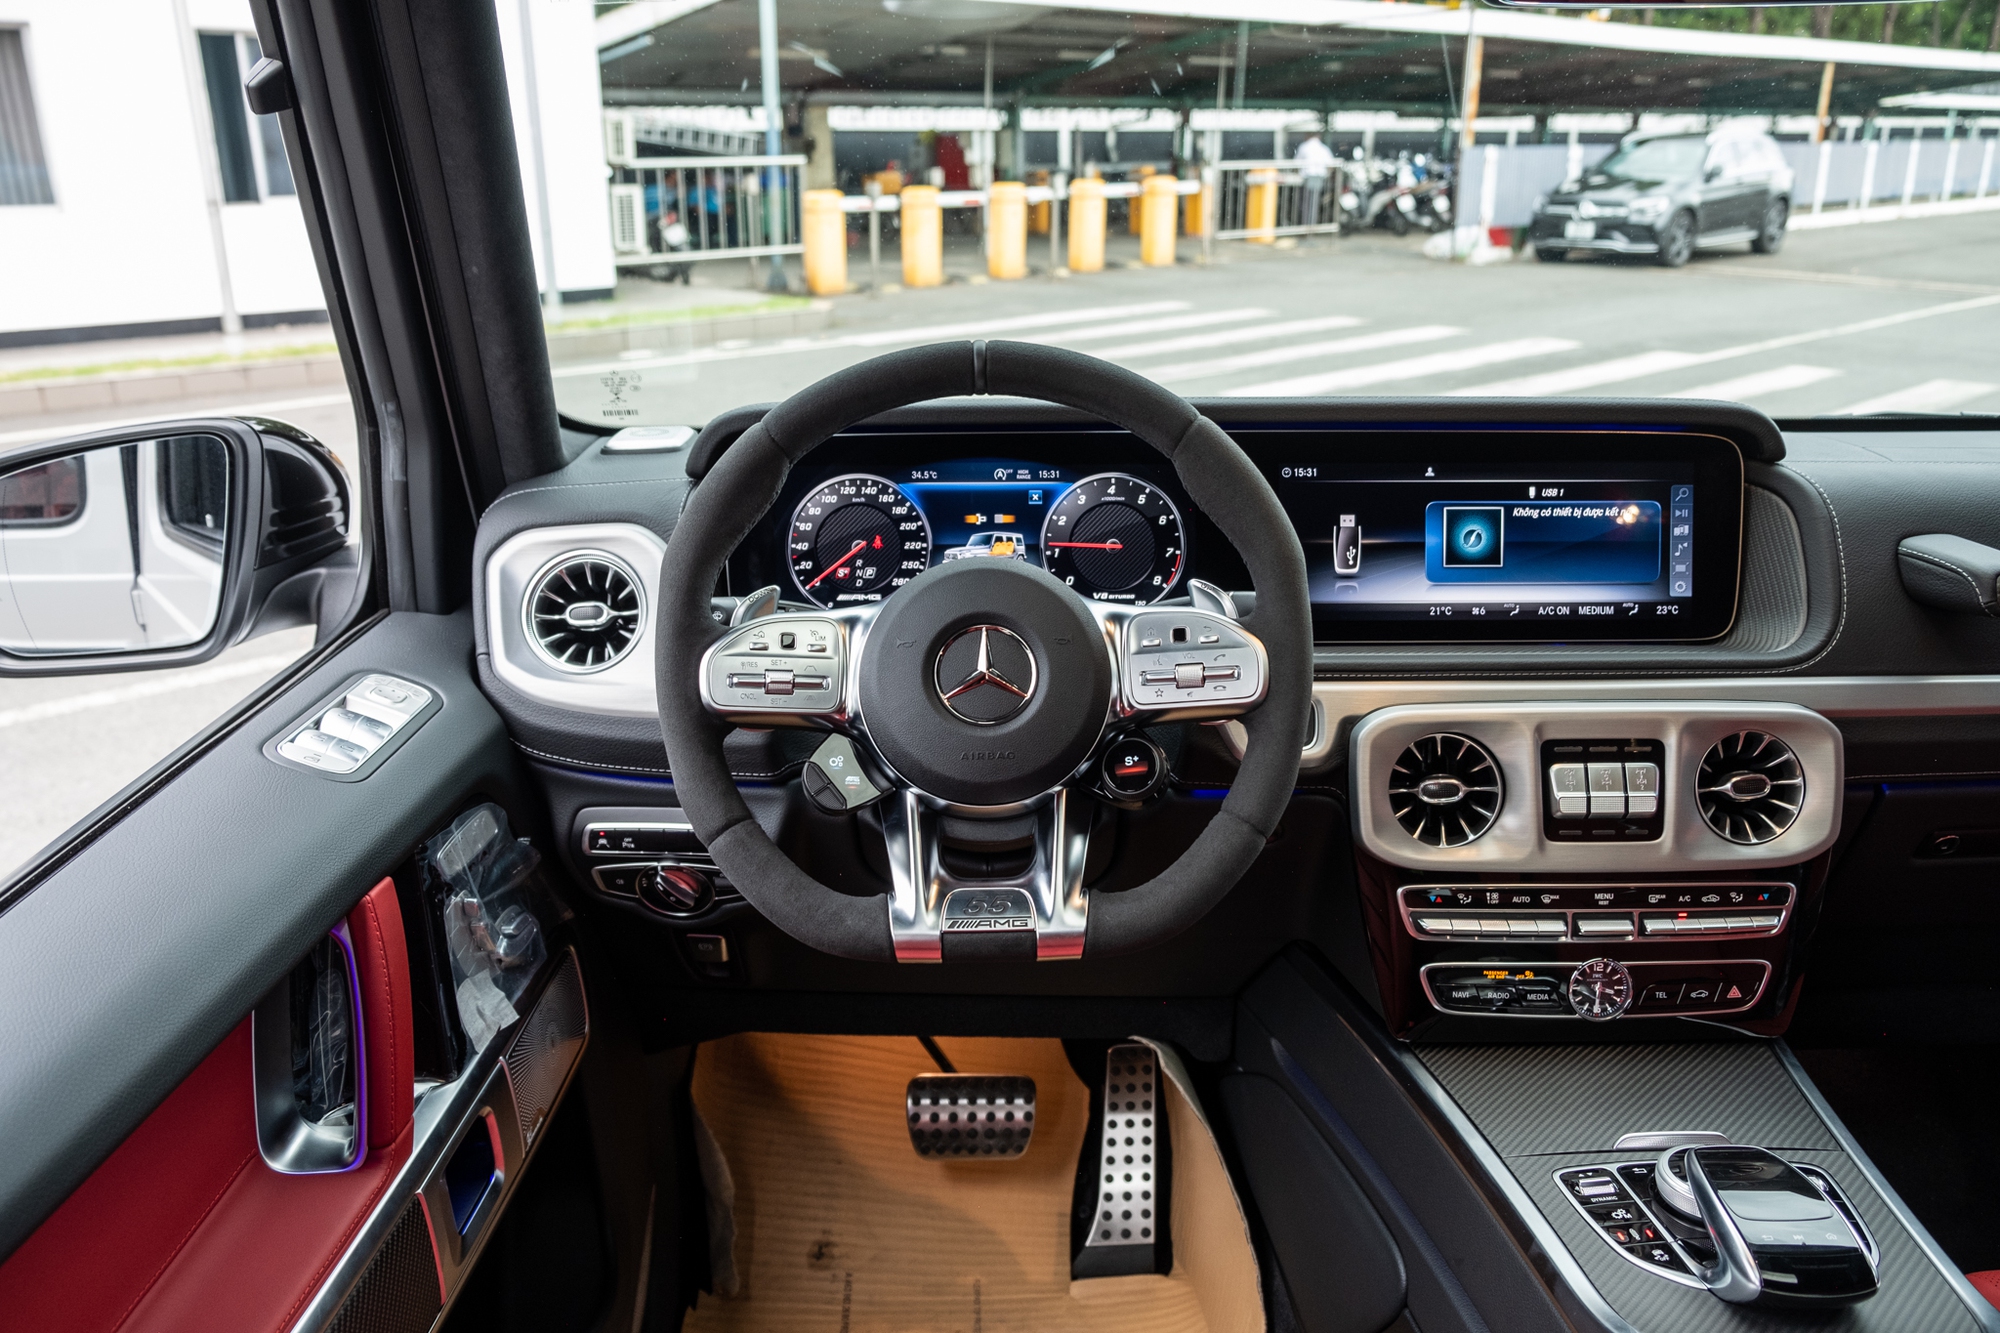 Tôi ngồi thử Mercedes-AMG G 63 Edition 55: Xe nhà giàu đúng nghĩa, thêm vài tiết trang trí nhưng giá chênh hơn 1 tỷ đồng - Ảnh 7.